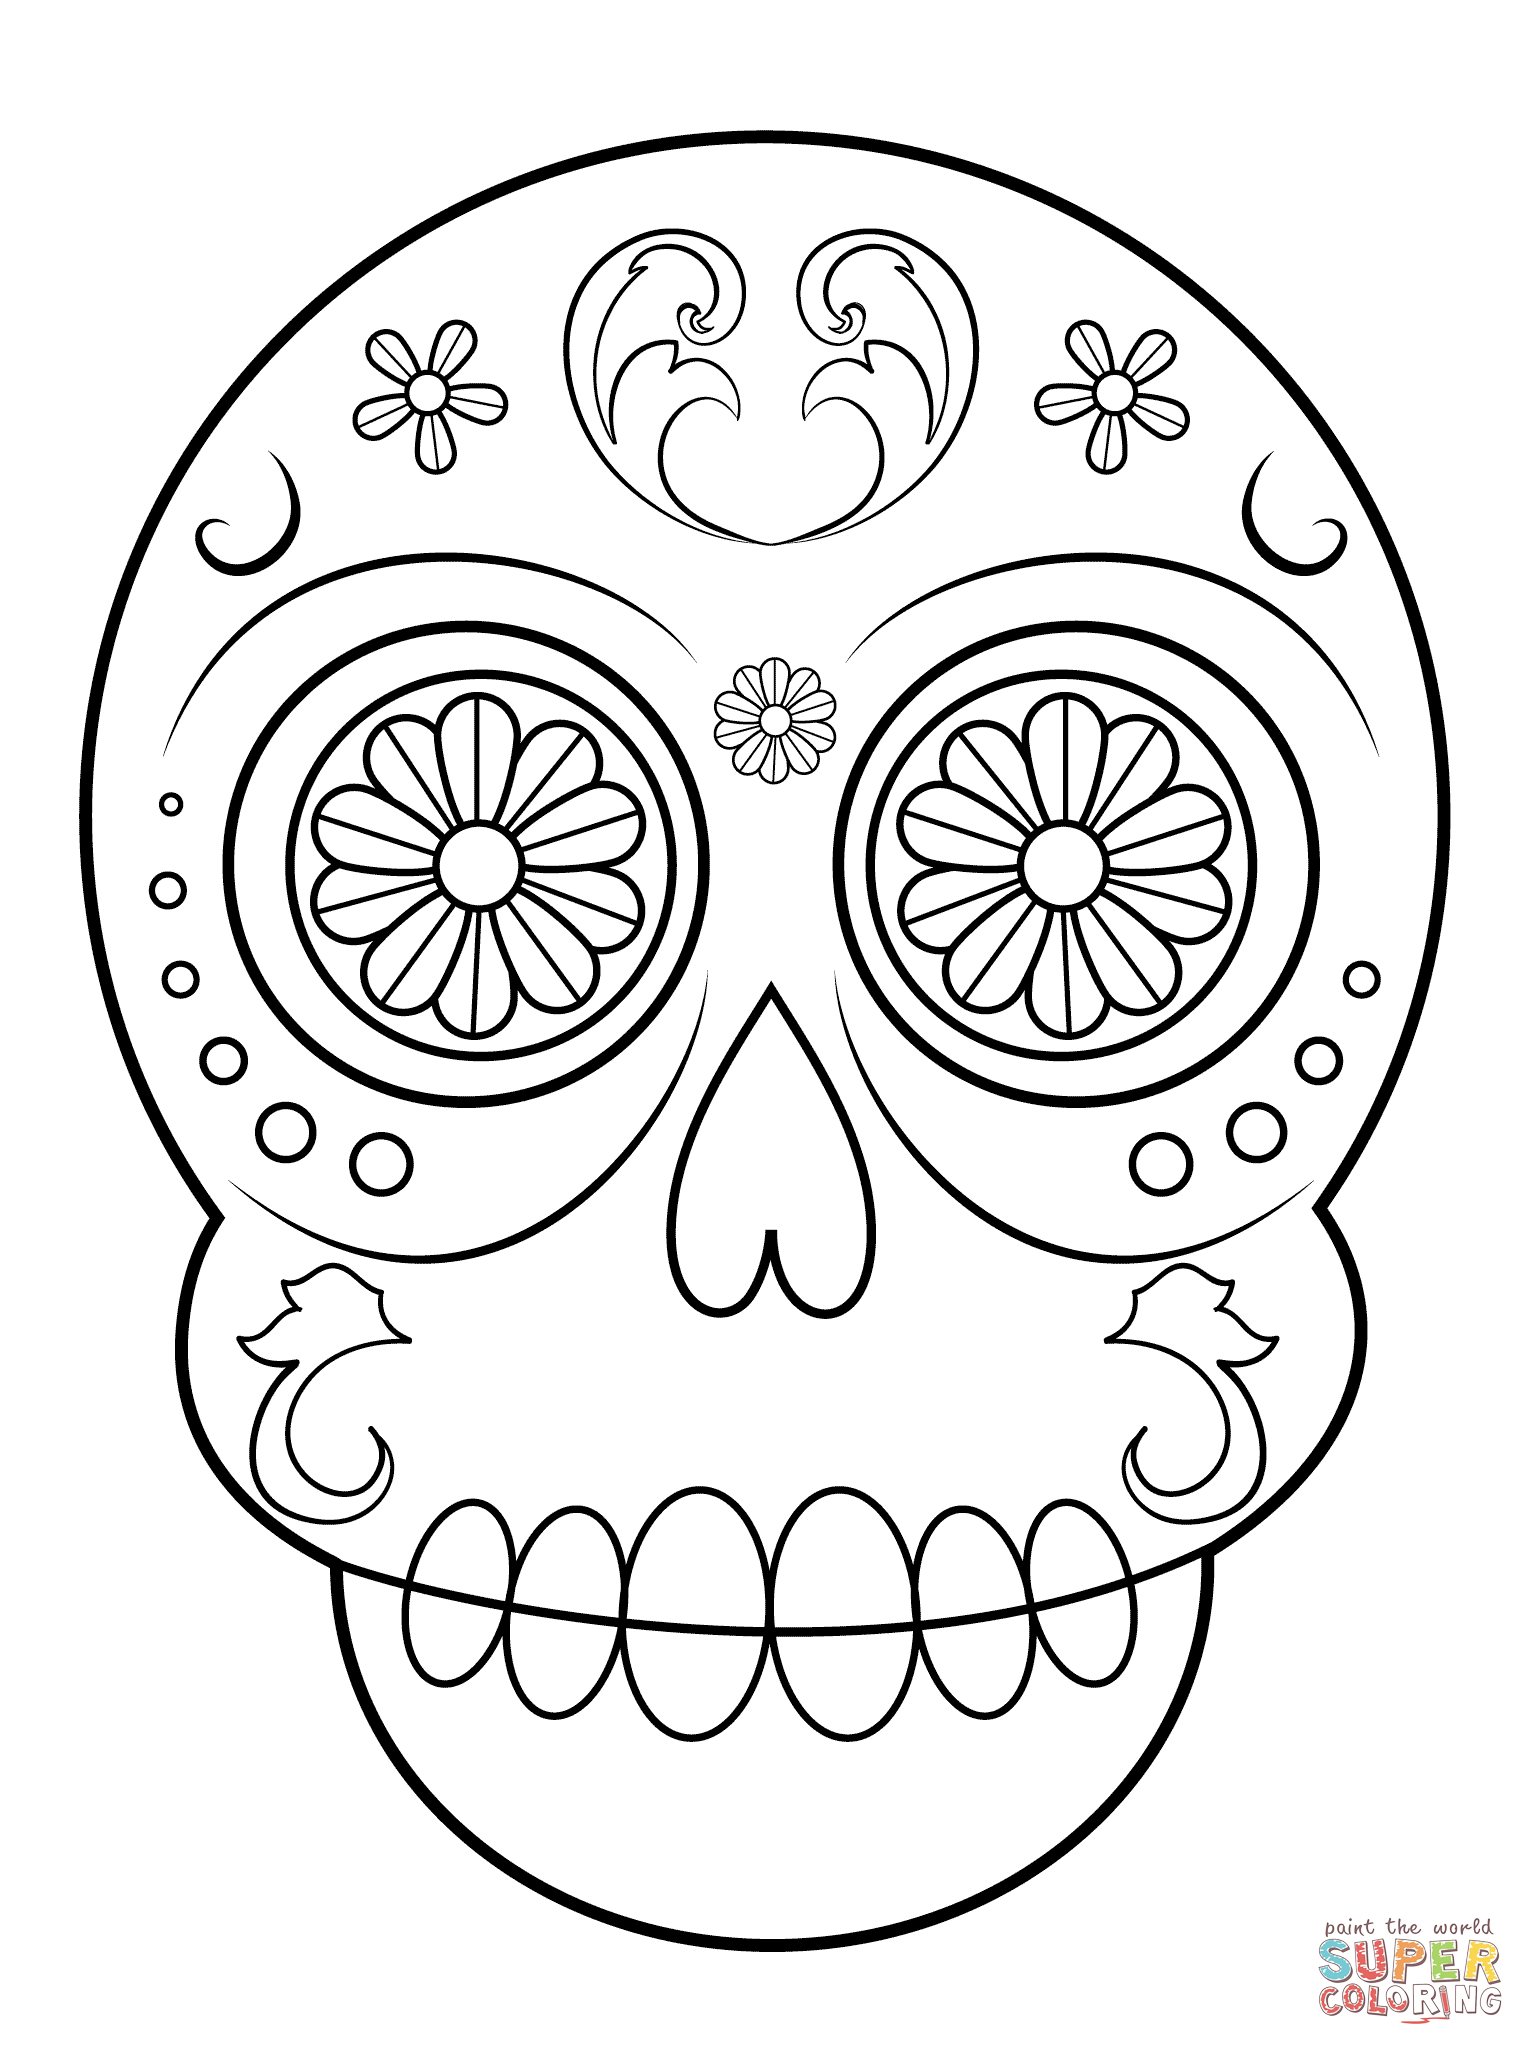 Sugar Skull Drawing Template at GetDrawings Free download